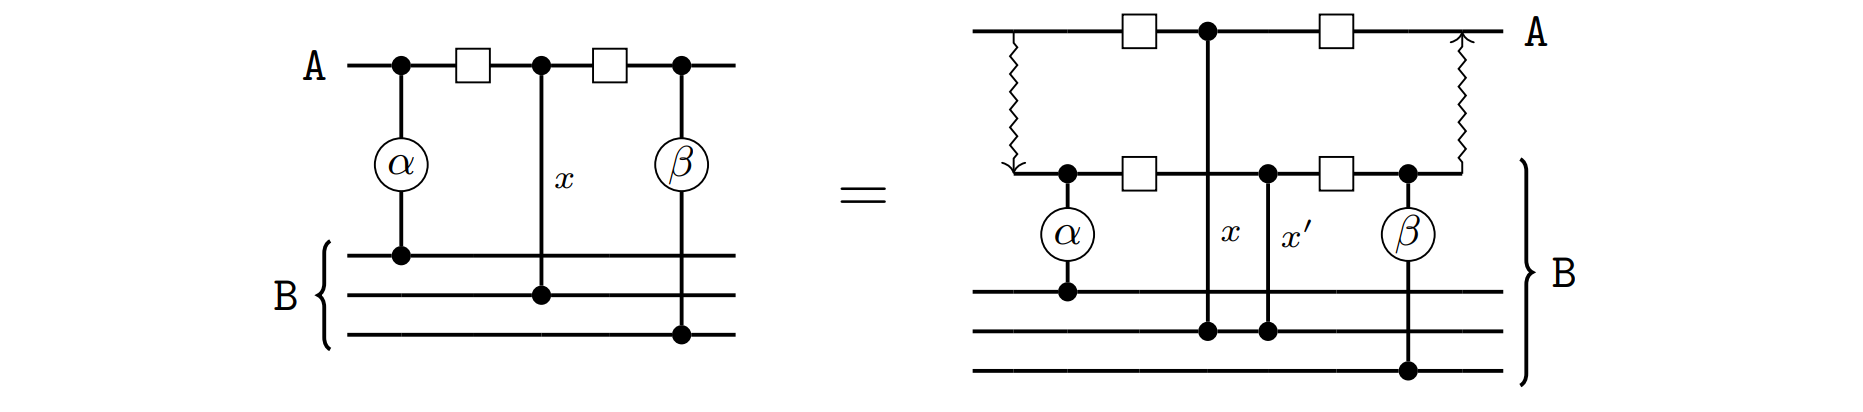 Basic example of embedding